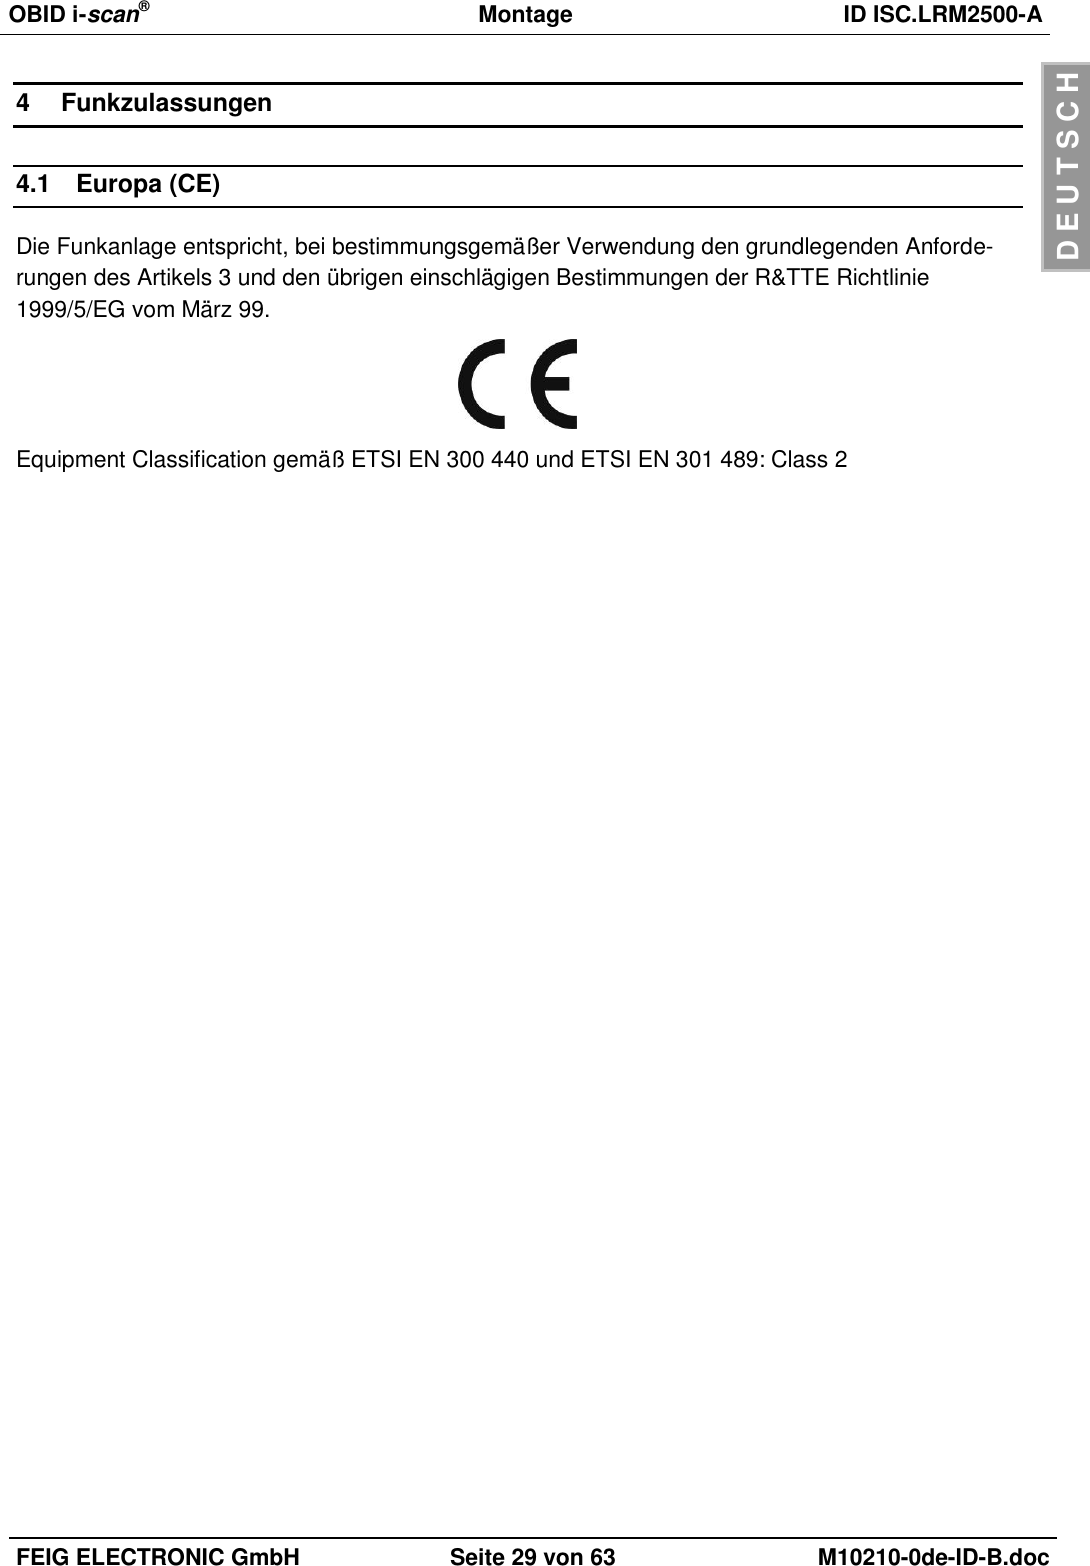 OBID i-scan®  Montage ID ISC.LRM2500-A  FEIG ELECTRONIC GmbH Seite 29 von 63 M10210-0de-ID-B.doc  D E U T S C H 4  Funkzulassungen 4.1  Europa (CE) Die Funkanlage entspricht, bei bestimmungsgemäßer Verwendung den grundlegenden Anforde-rungen des Artikels 3 und den übrigen einschlägigen Bestimmungen der R&amp;TTE Richtlinie 1999/5/EG vom März 99.  Equipment Classification gemäß ETSI EN 300 440 und ETSI EN 301 489: Class 2  